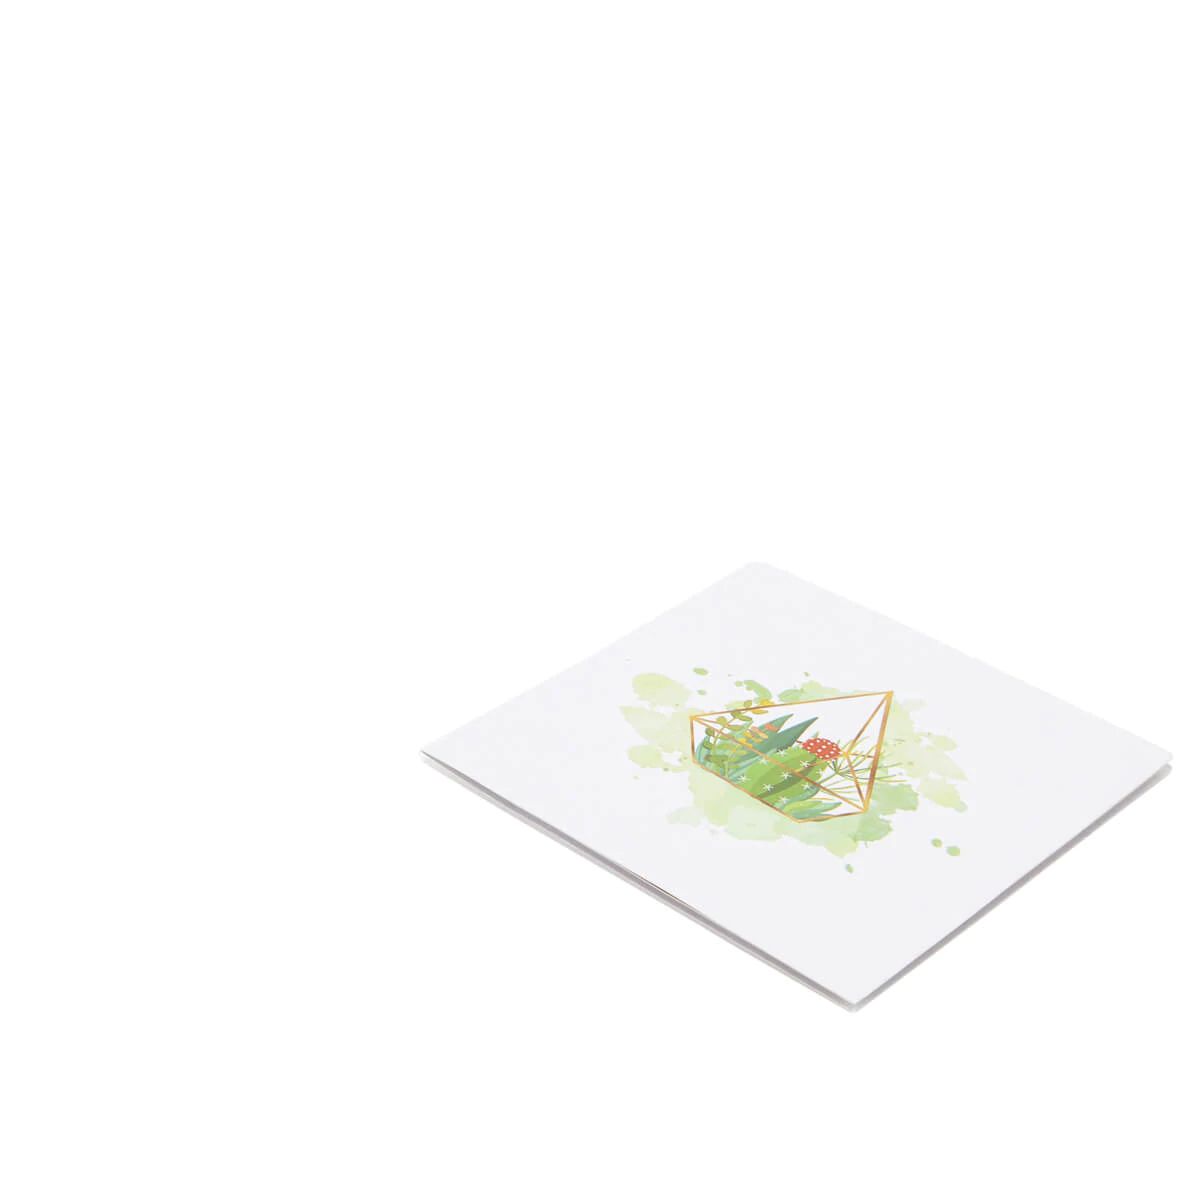 Terrarium Miniature Garden Pop Up Greeting Card